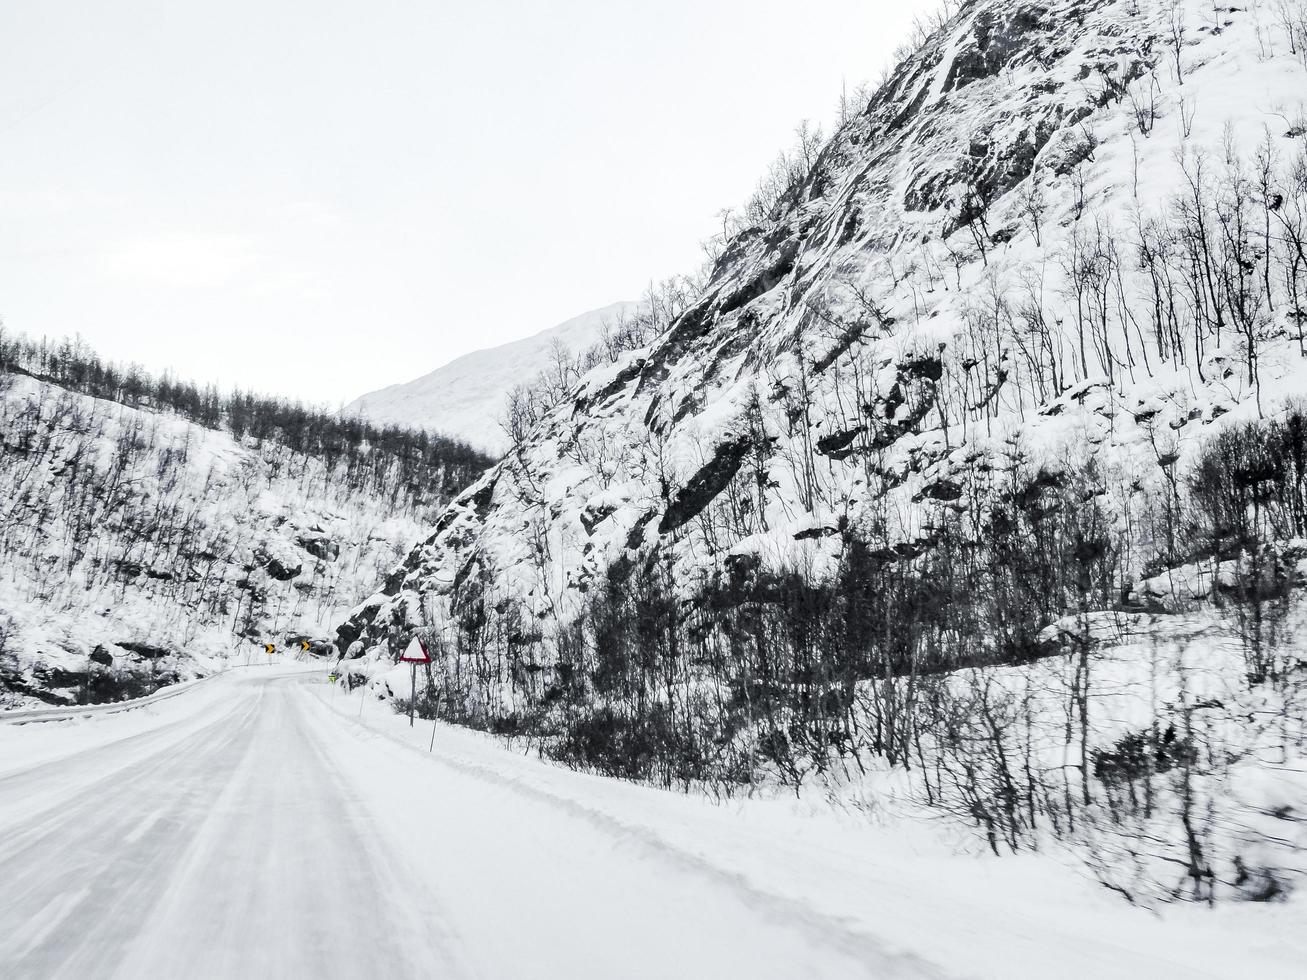 dirigindo pela estrada de neve e paisagem na Noruega. foto